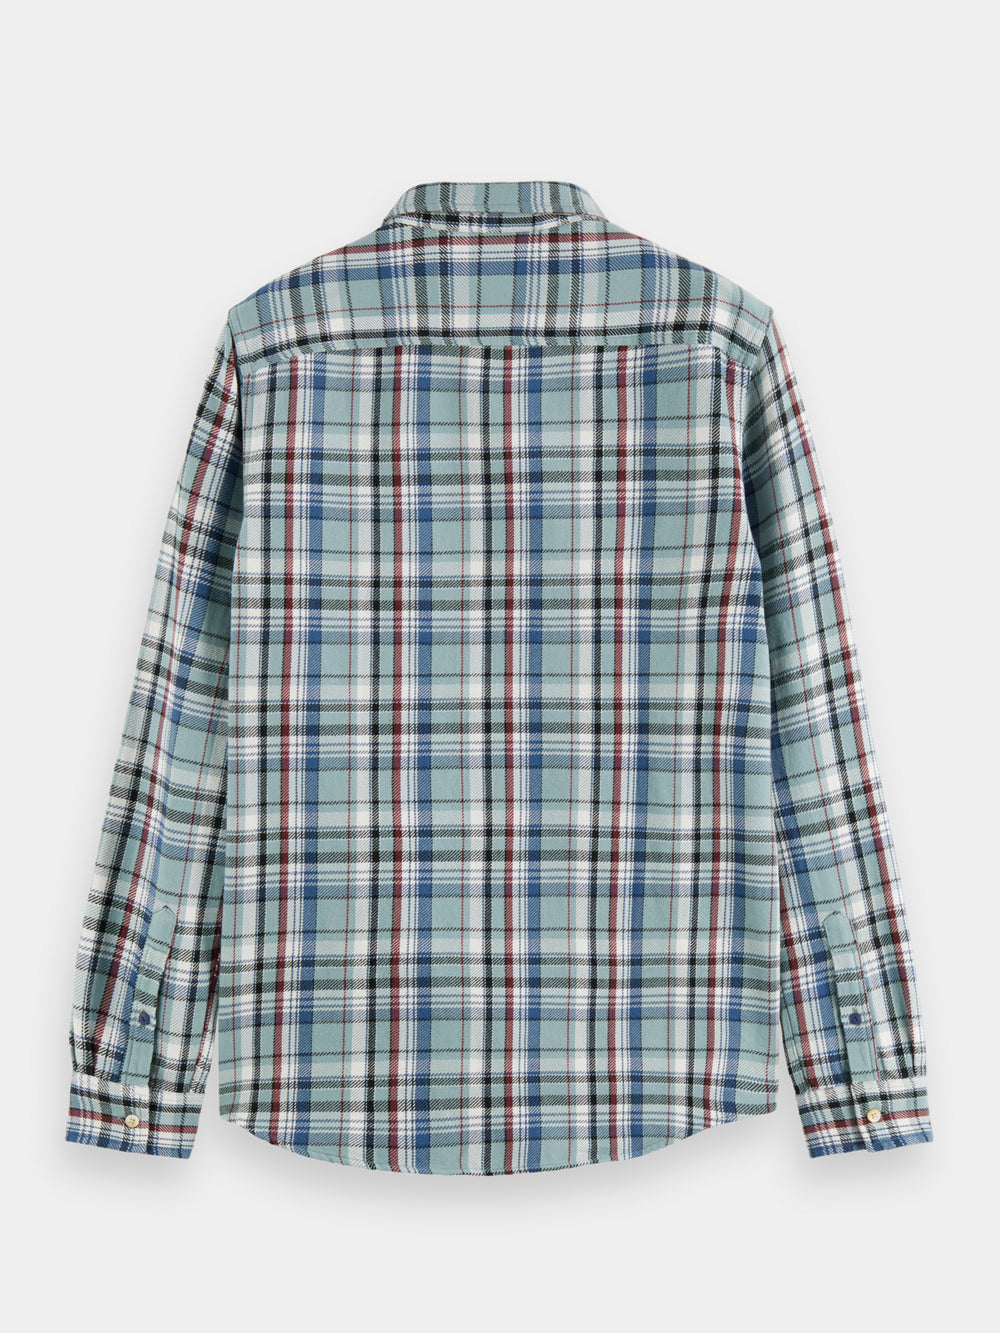 Flannel check shirt - Scotch & Soda AU